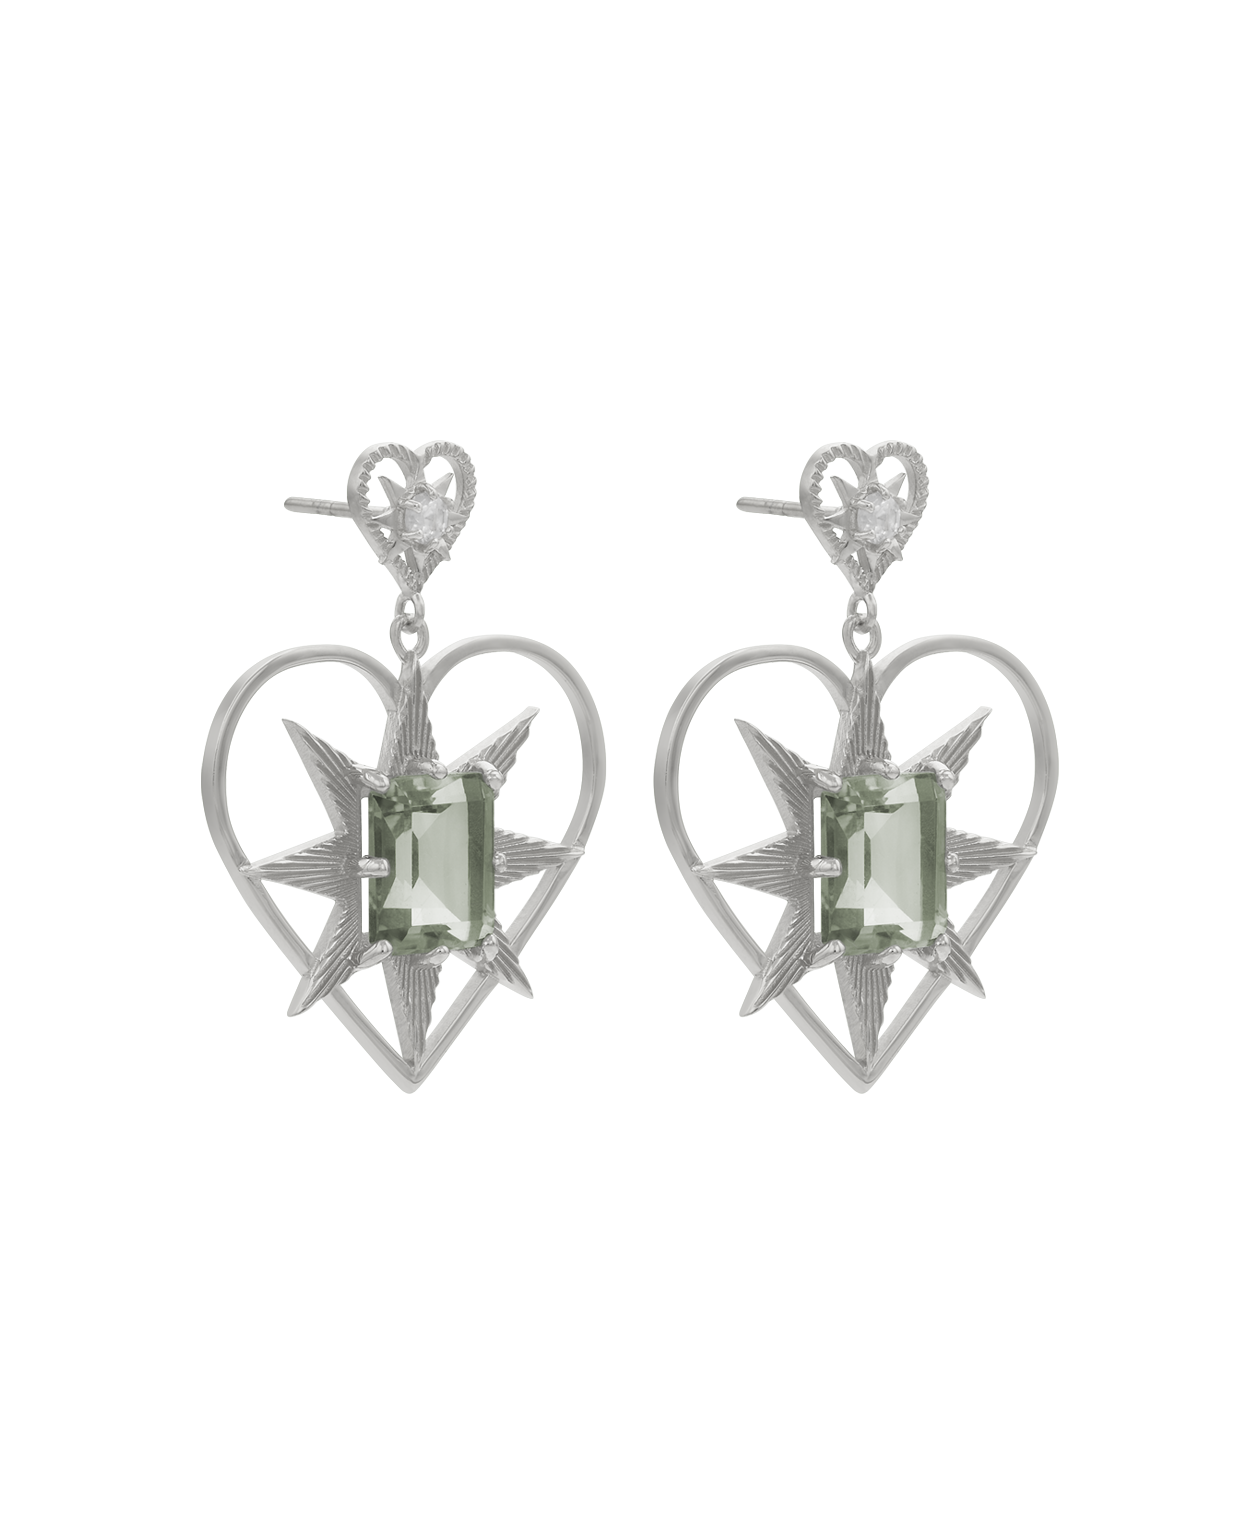 Zoe & Morgan | Shining Heart Earrings - Silver/White Zircon & Green Amethyst